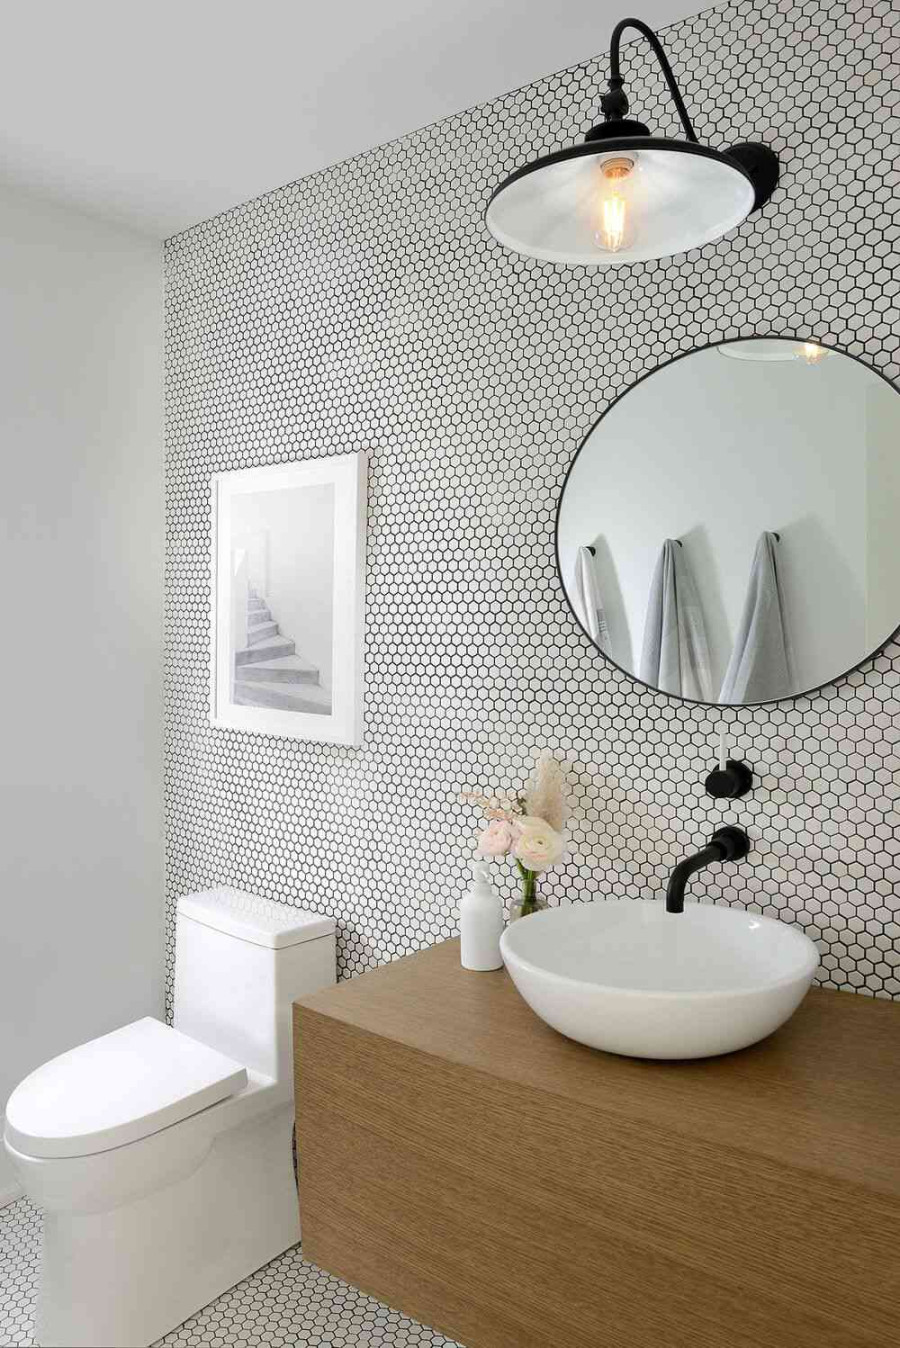 Easy And Stylish Small Bathroom Tile Ideas